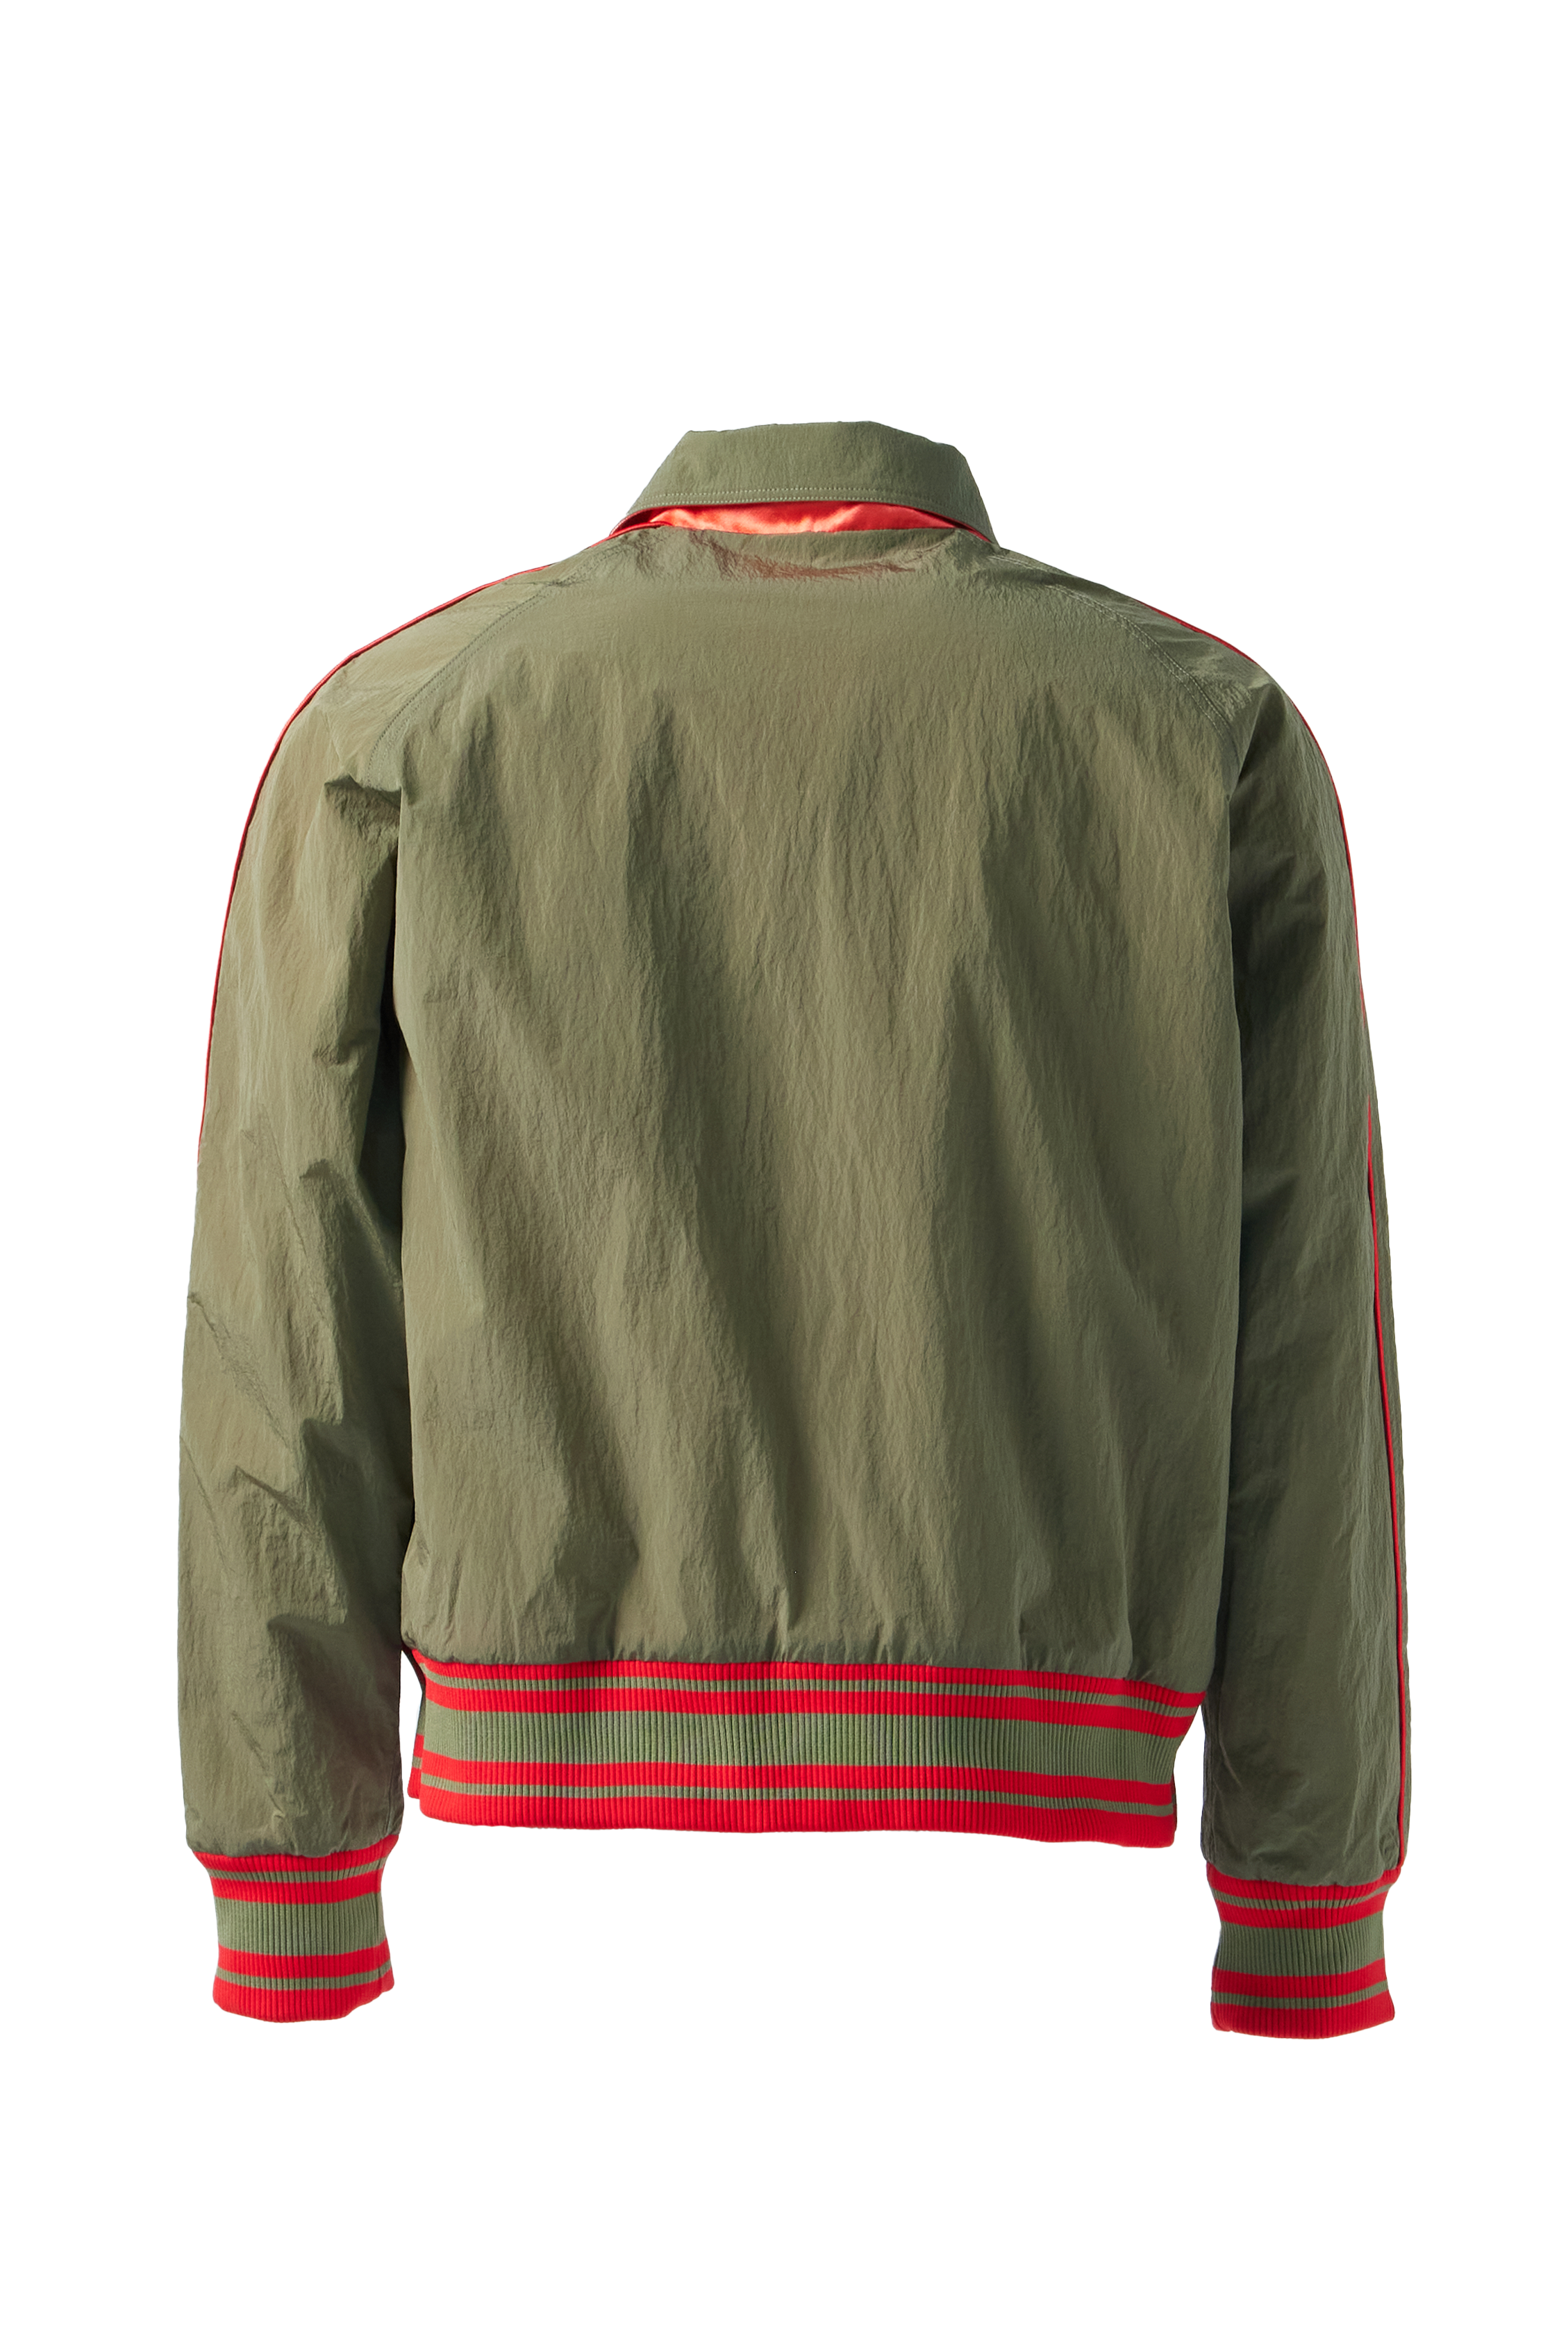 BLUEMARBLE - Reversible Varsity Jacket product image